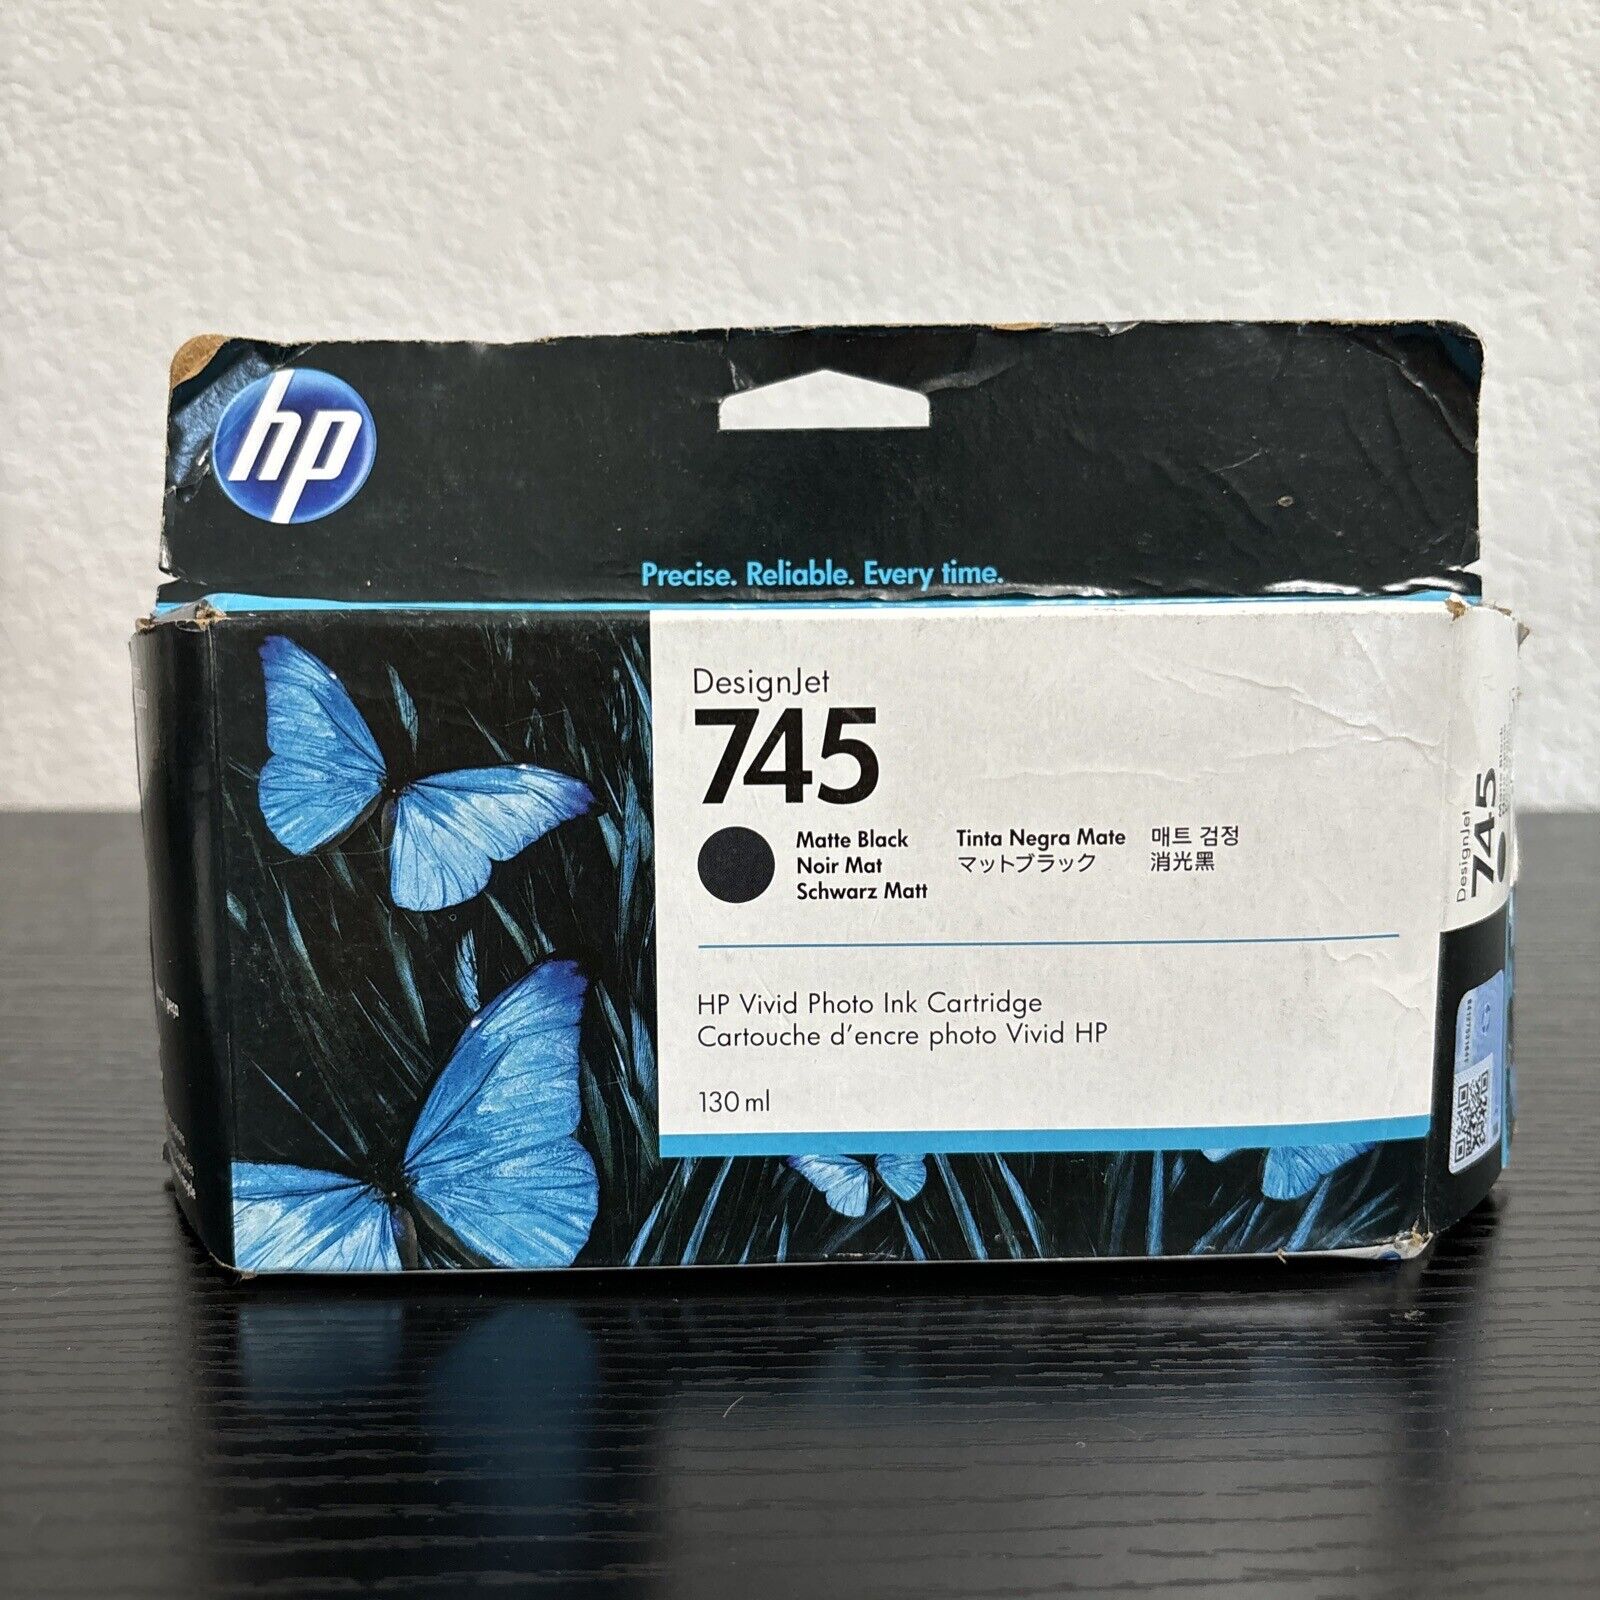 New Genuine HP 745 Photo Black Ink Designjet Z2600 Z5600 130ml EXP 03/2023